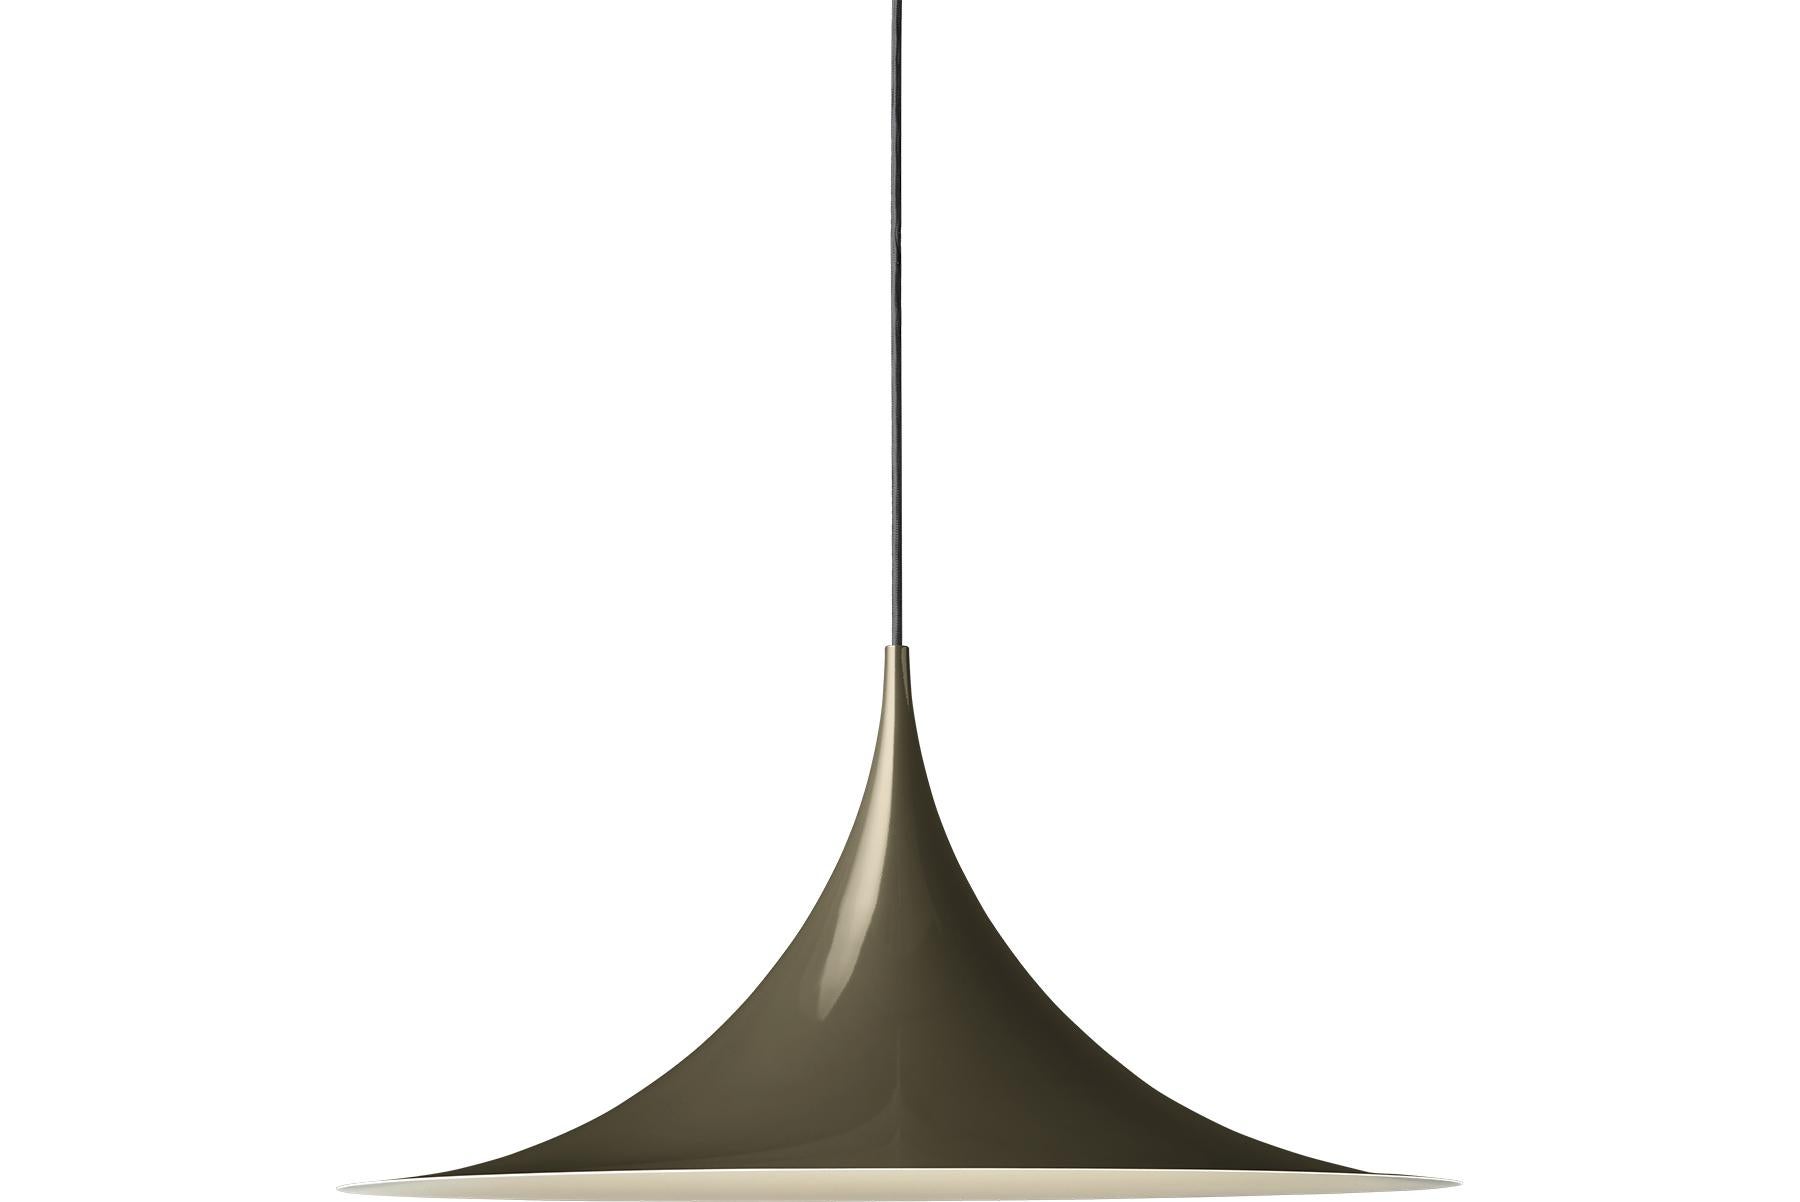 Le Semi Pendant est une lampe suspendue unique, basée sur deux quarts de cercle assemblés dos à dos. Son abat-jour en métal émaillé en forme d'arche crée une lumière diffuse en forme de cône, idéale au-dessus d'une table à manger ou d'un plan de